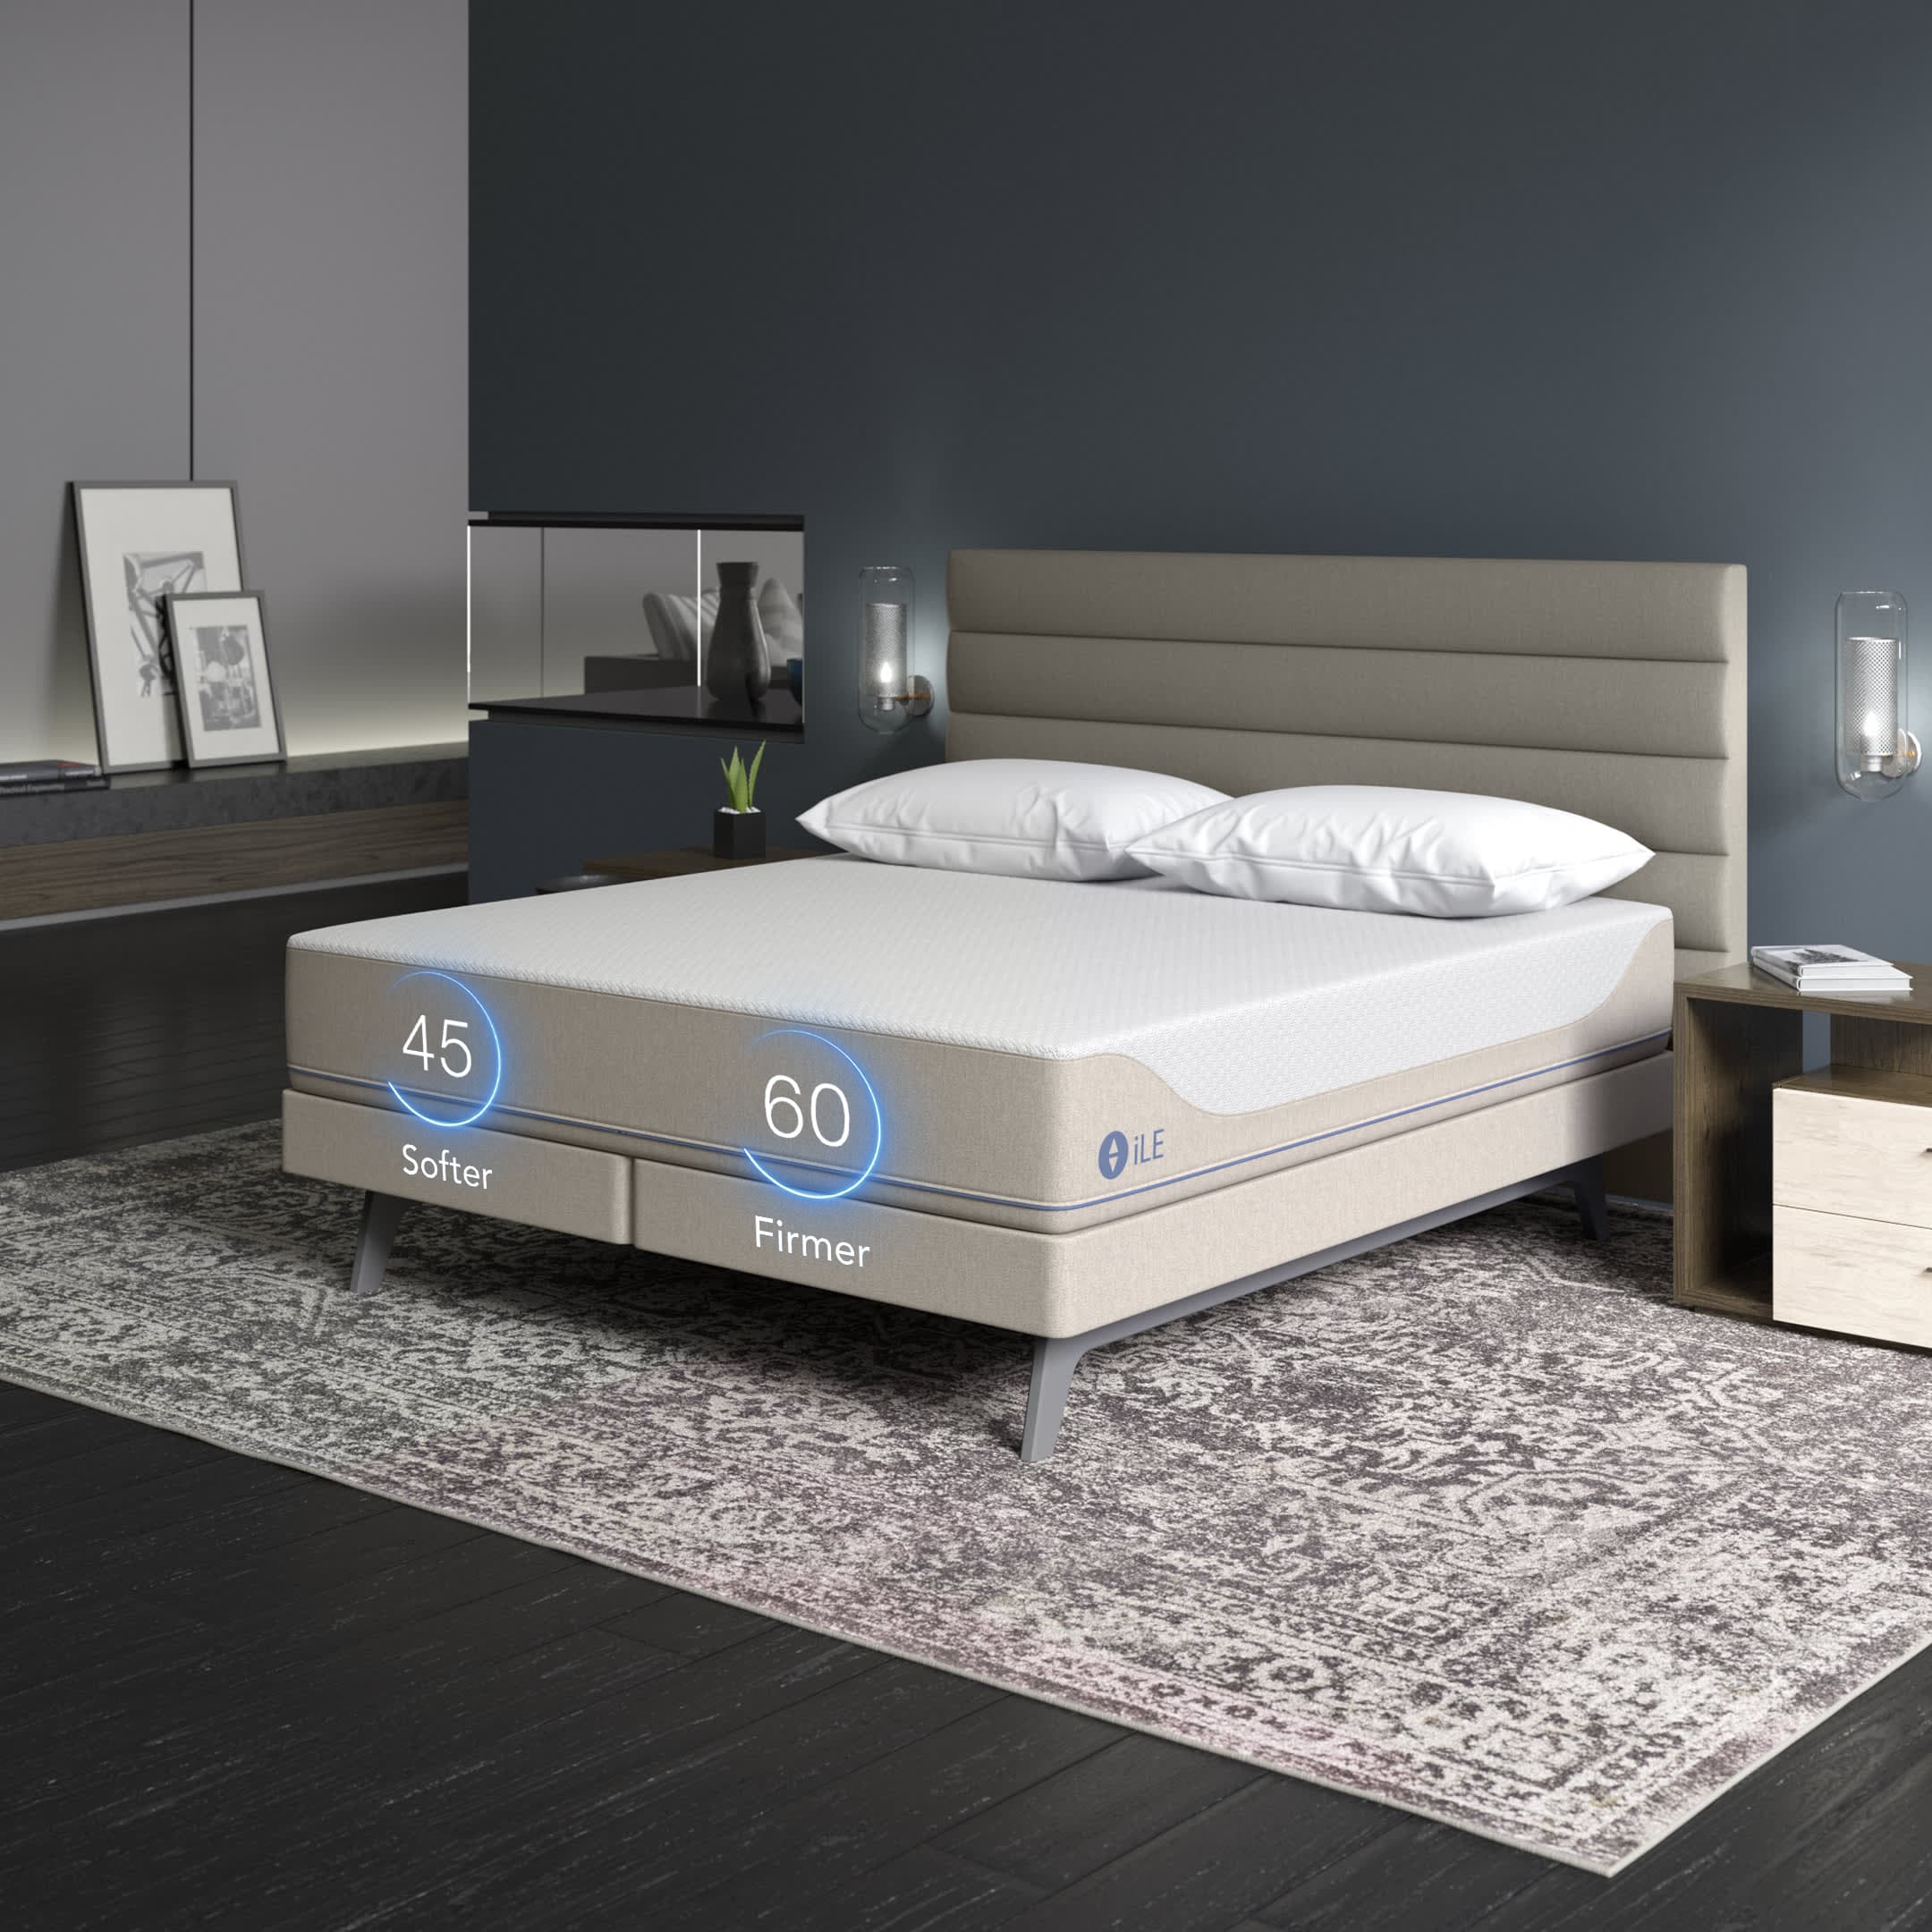 iLE 360 Smart Bed - Sleep Number